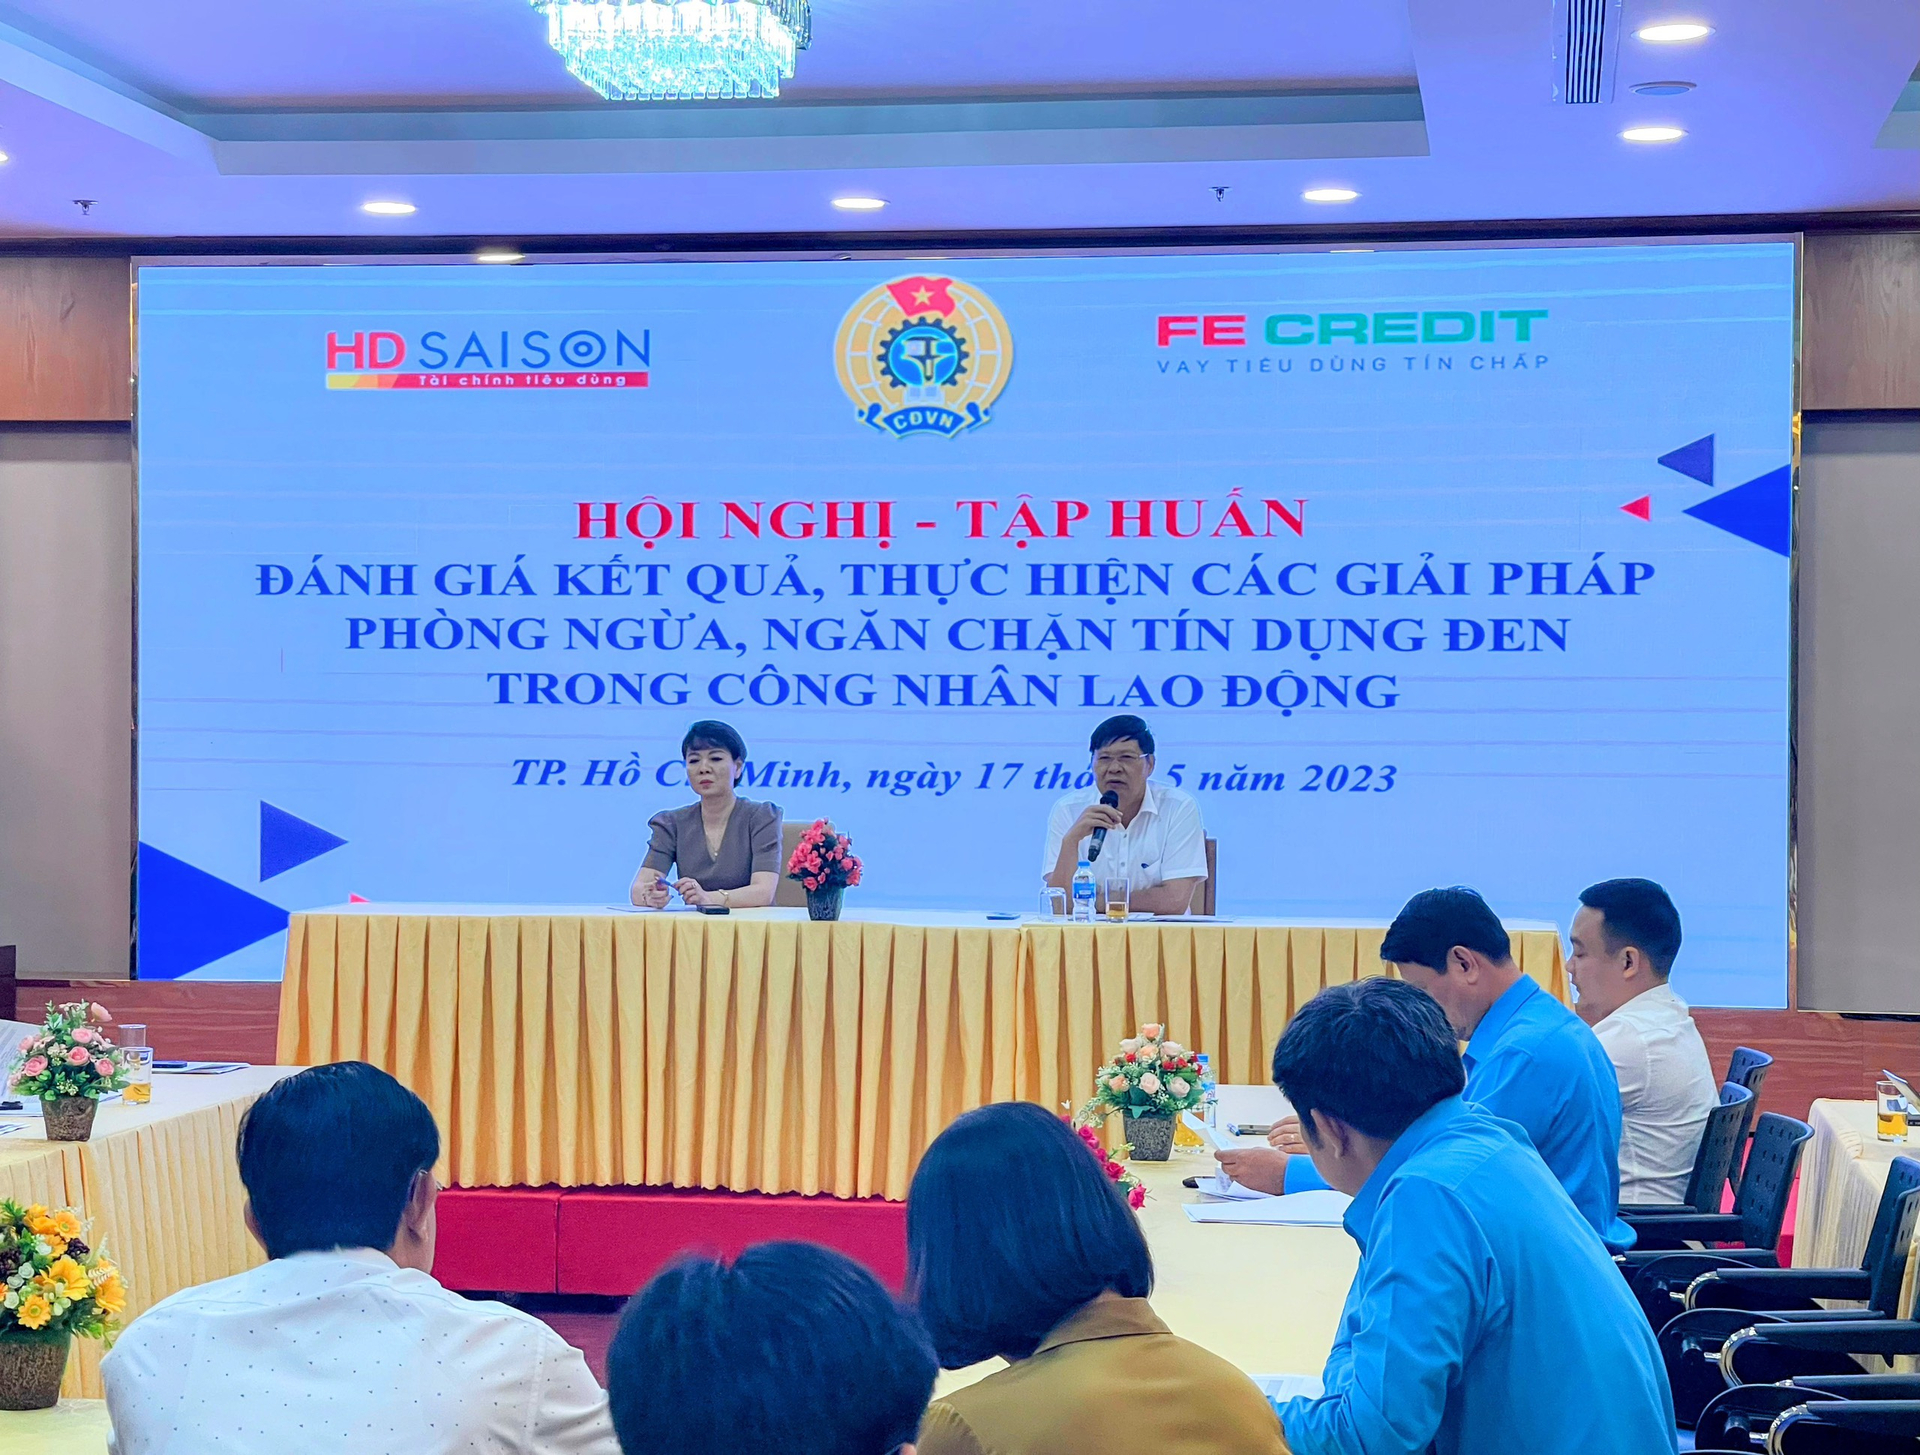 Tổng Liên đoàn Lao Động Việt Nam đã tổ chức Hội nghị Tập huấn đánh giá kết quả, thực hiện các giải pháp phòng ngừa, ngăn chặn tín dụng đen trong công nhân lao động trên toàn quốc. Ảnh: FE.